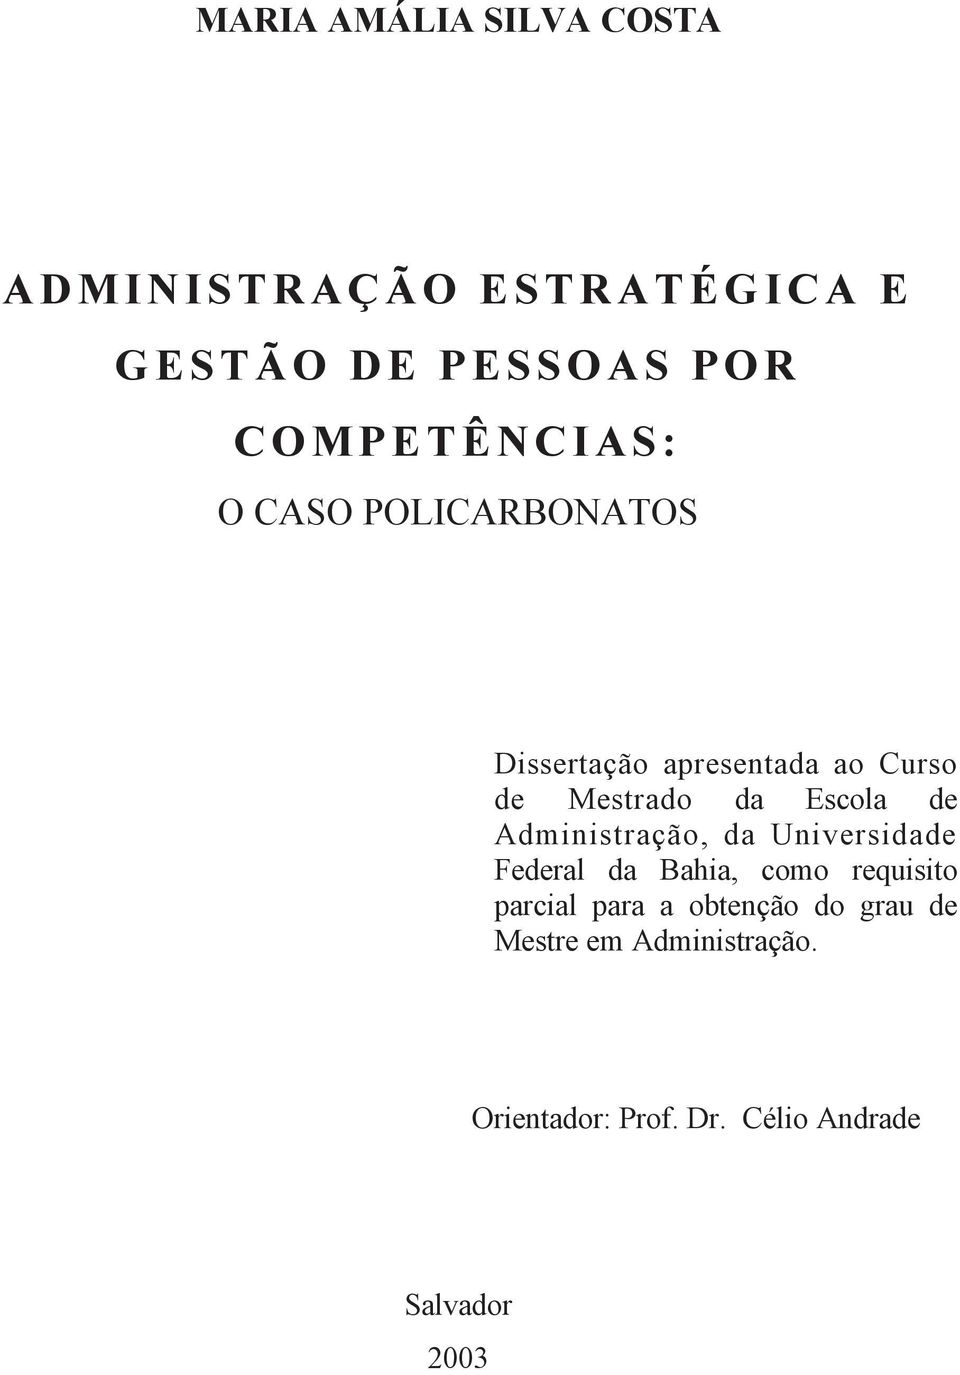 Mestrado da Escola de Administração, da Universidade Federal da Bahia, como requisito parcial